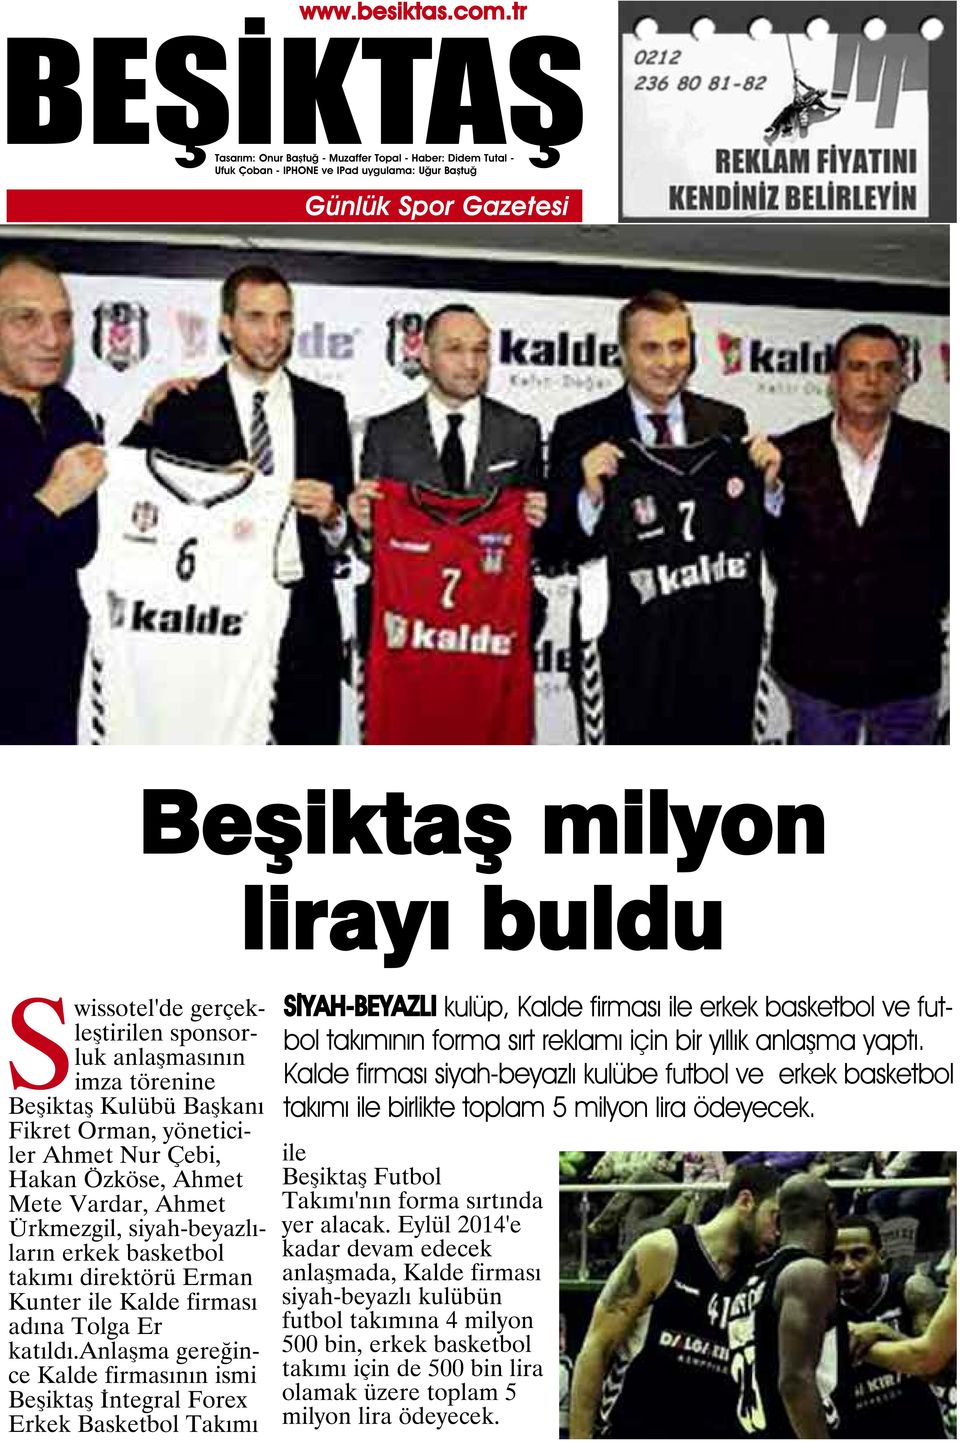 anlaşma gereğince Kalde firmasının ismi Beşiktaş İntegral Forex Erkek Basketbol Takımı SİYAH-BEYAZLI kulüp, Kalde firması ile erkek basketbol ve futbol takımının forma sırt reklamı için bir yıllık